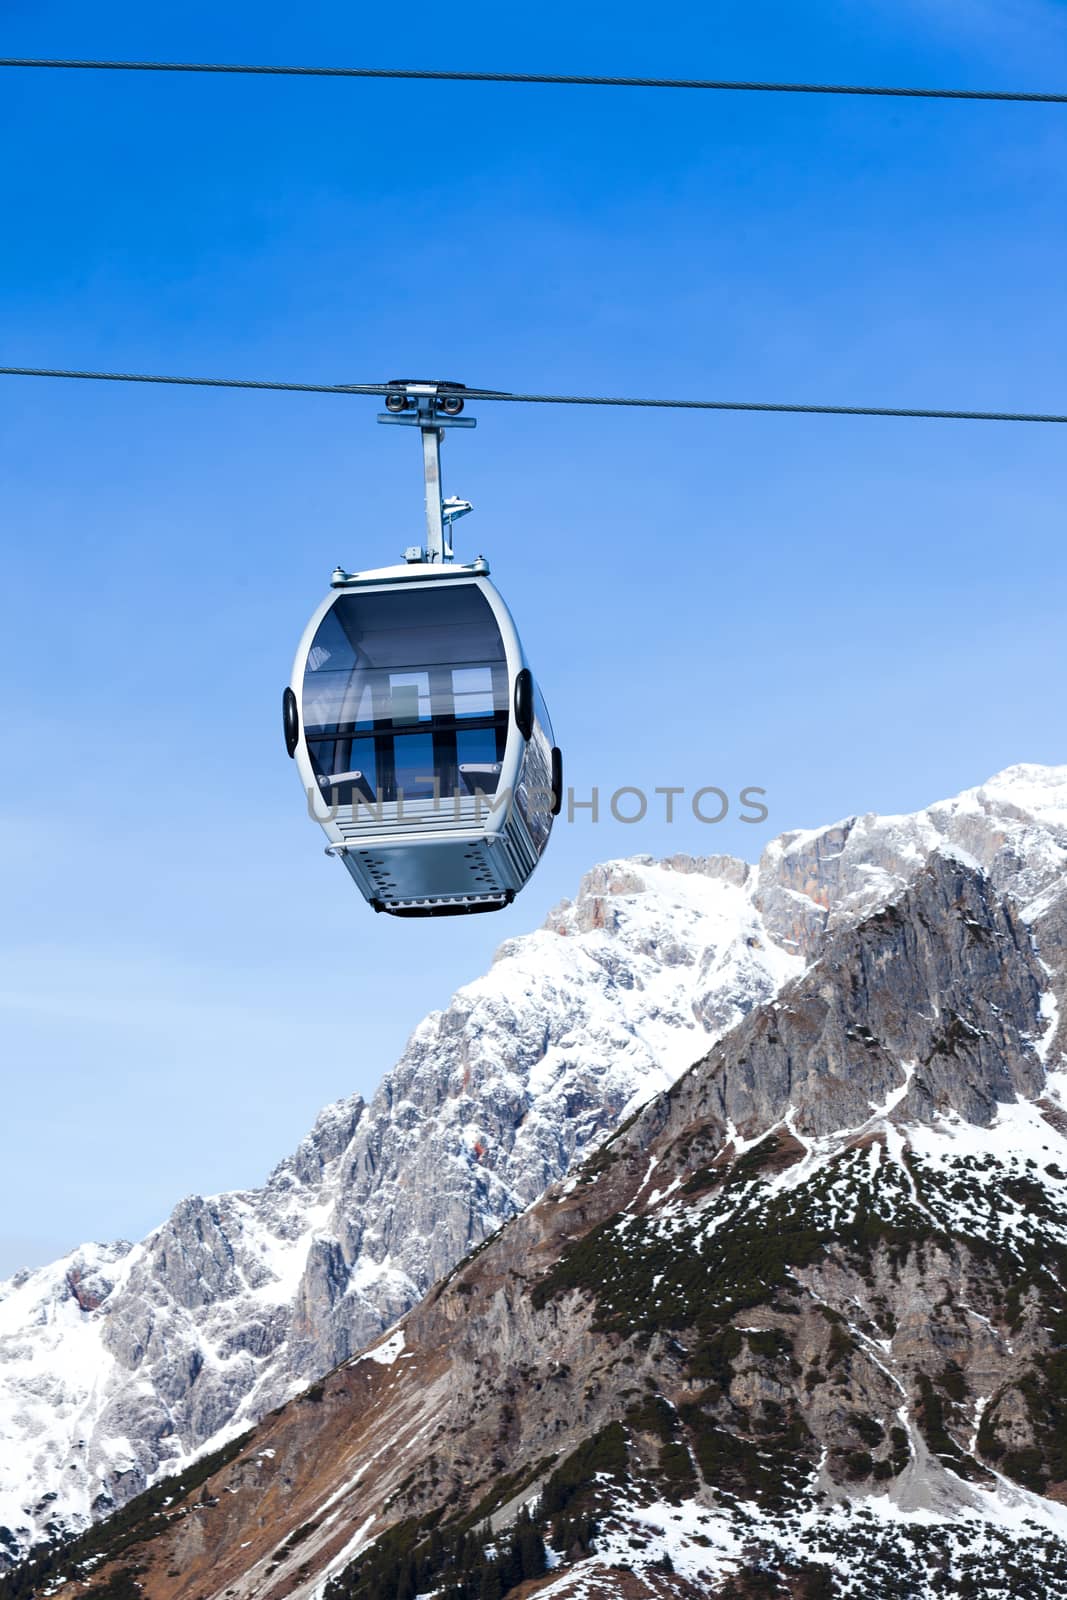 Ski resort in Austria by maxoliki